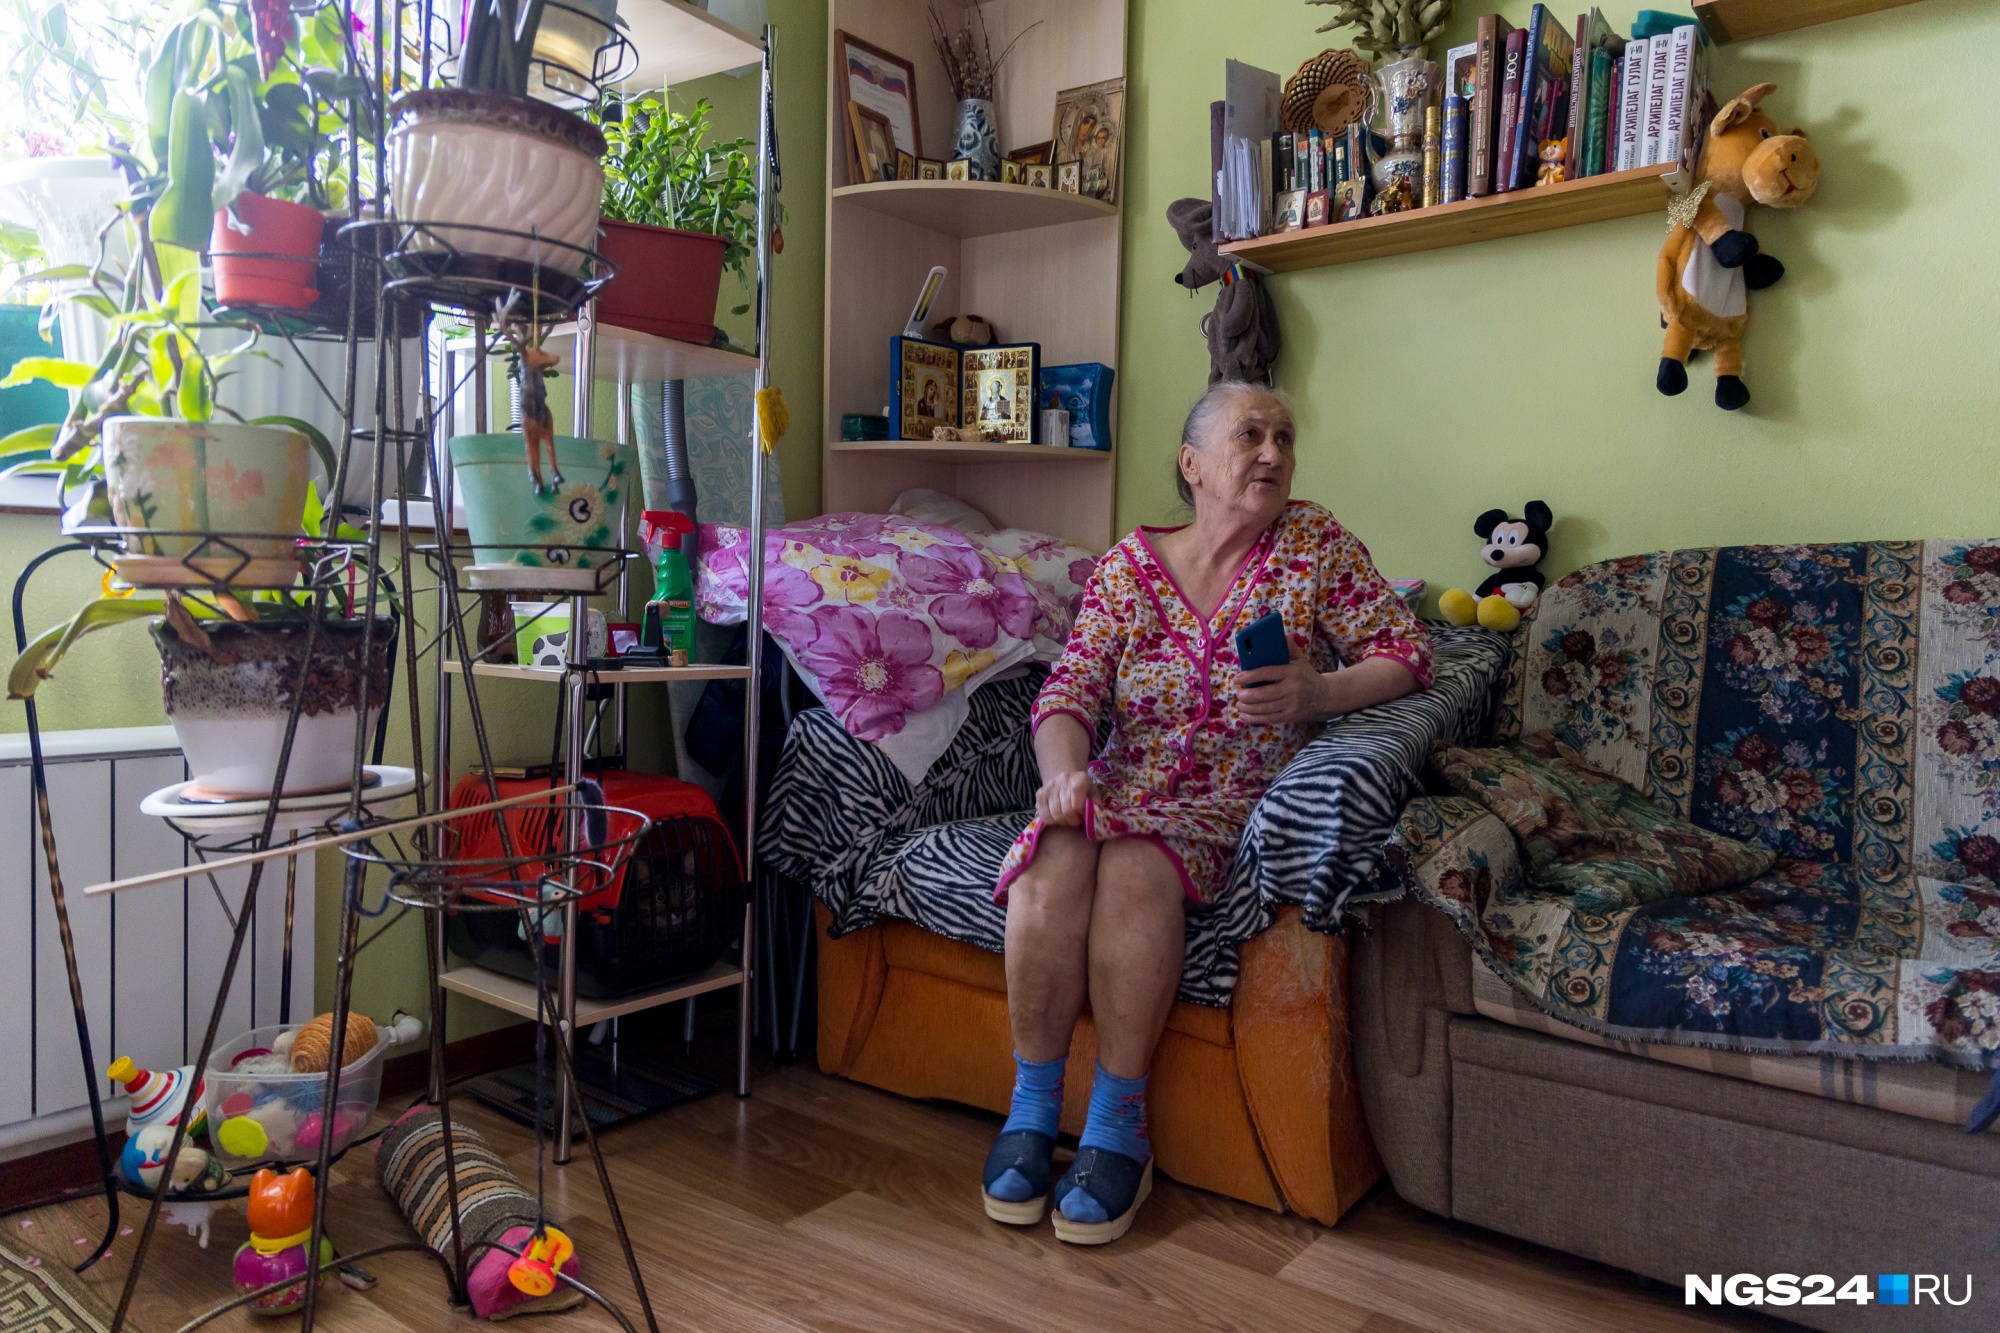 «На что хватило денег, то и покупали», — говорят жительницы дома на Гагарина, 64